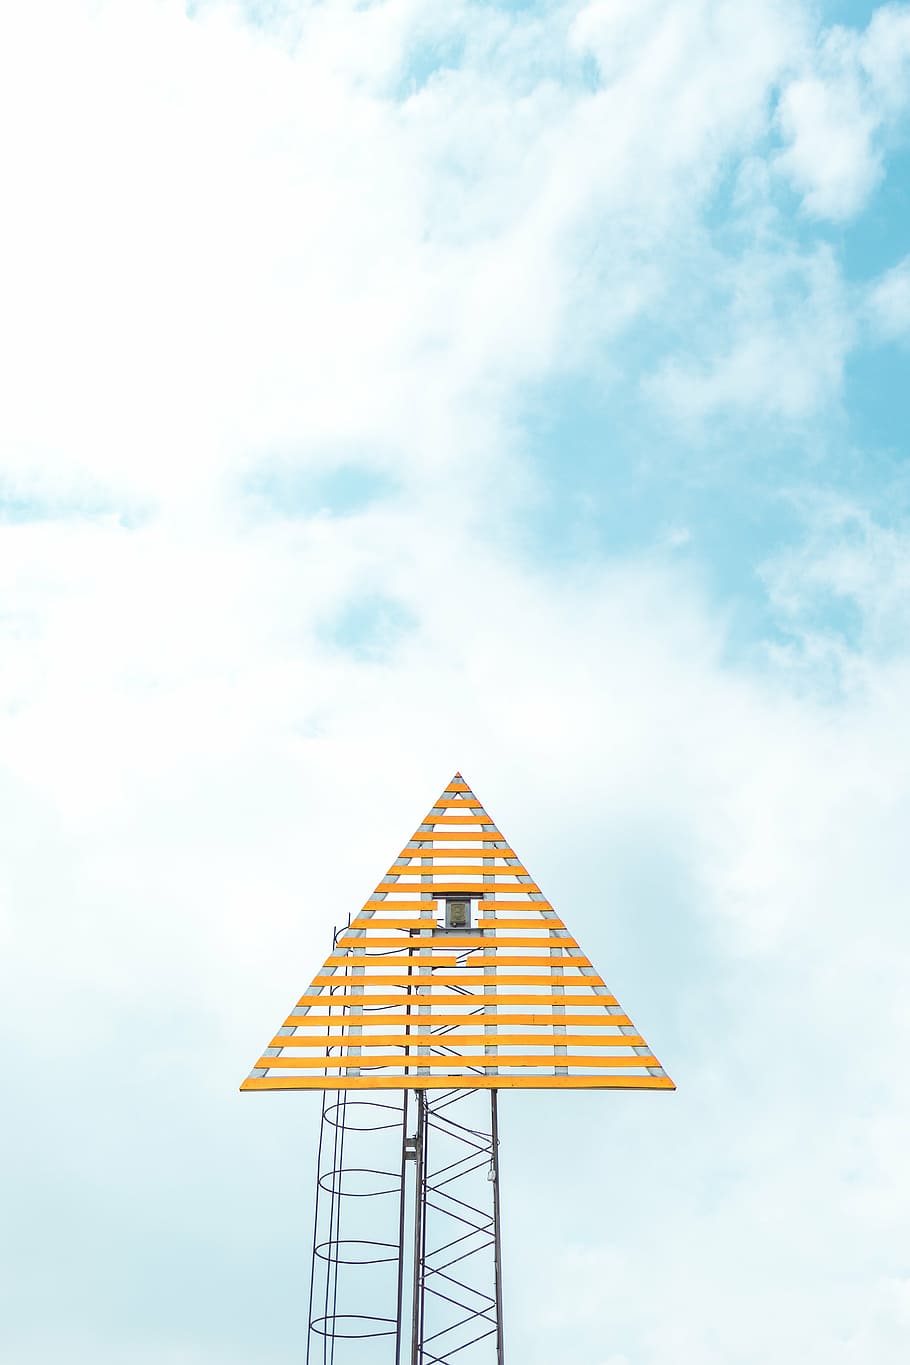 pirâmide, nublado, trabalho artístico do céu, triangular, torre, câmera, azul, céu, nuvem, sinal